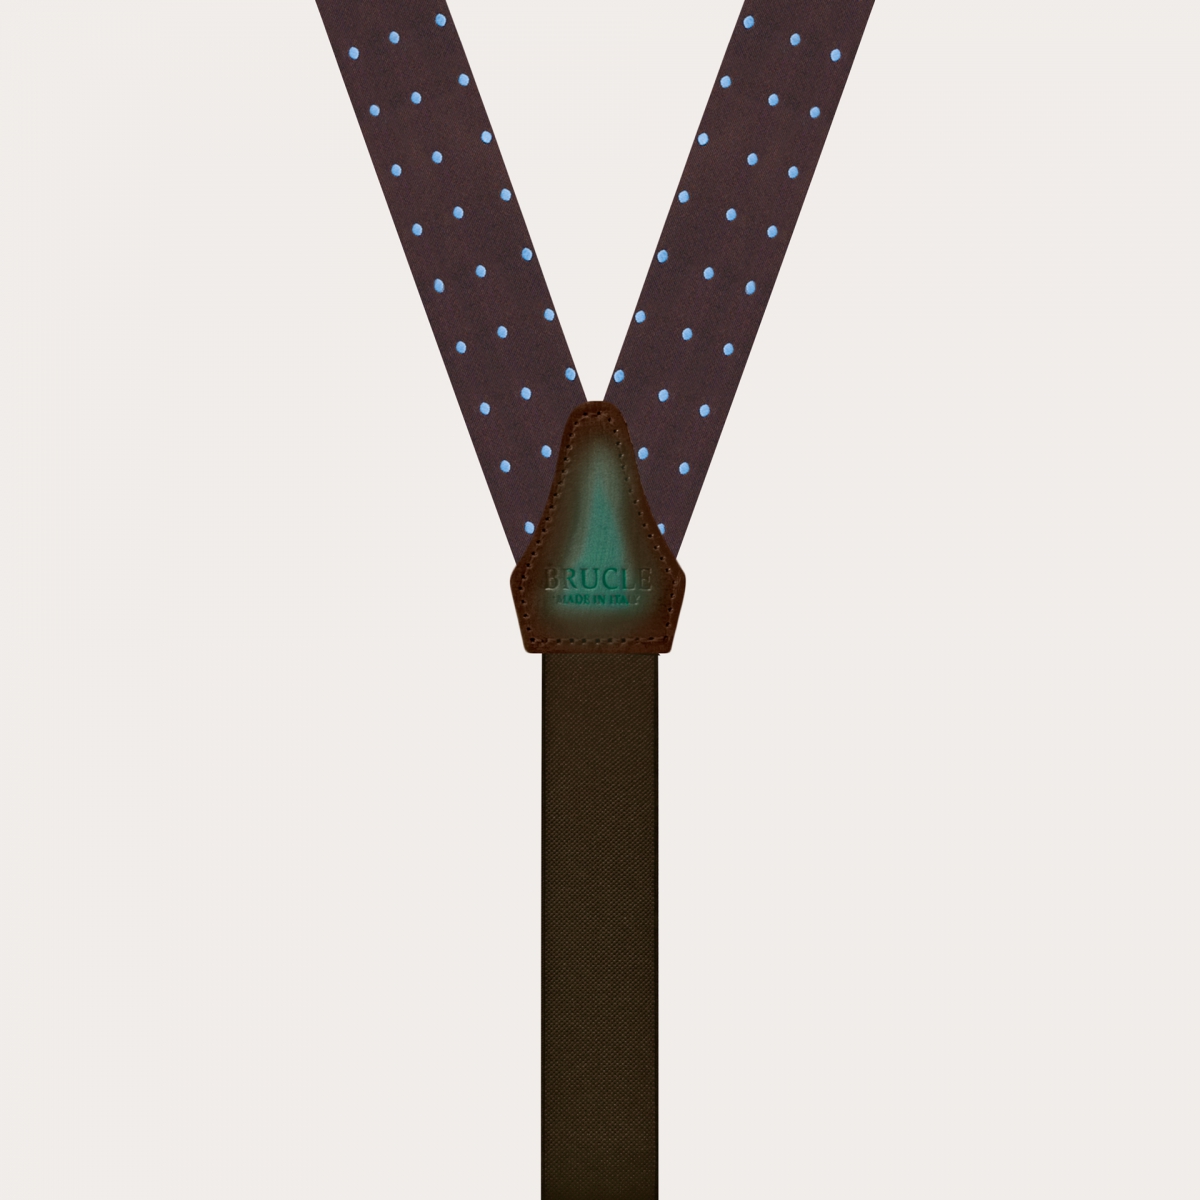 BRUCLE Raffinate bretelle sottili in seta jacquard marrone con puntaspillo azzurro